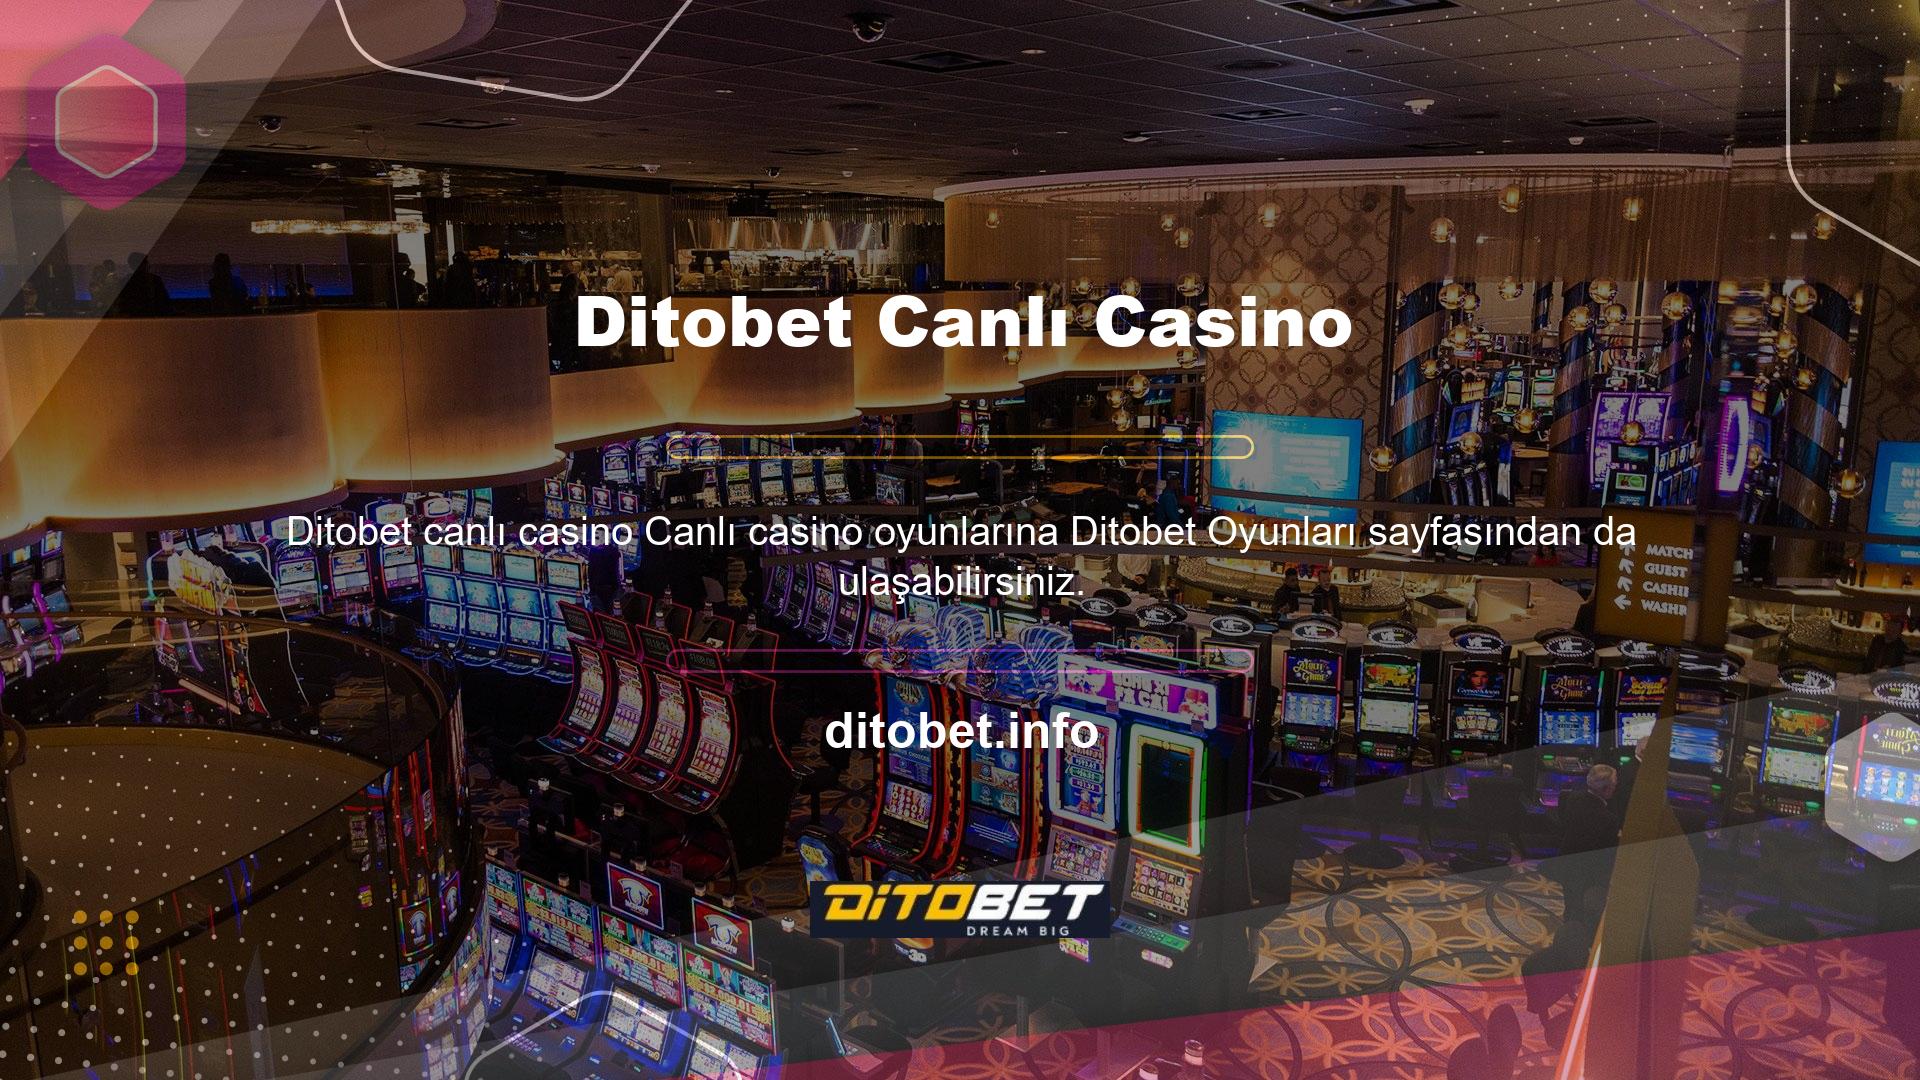 Ditobet, farklı platformda canlı casino oyunlarını desteklemektedir